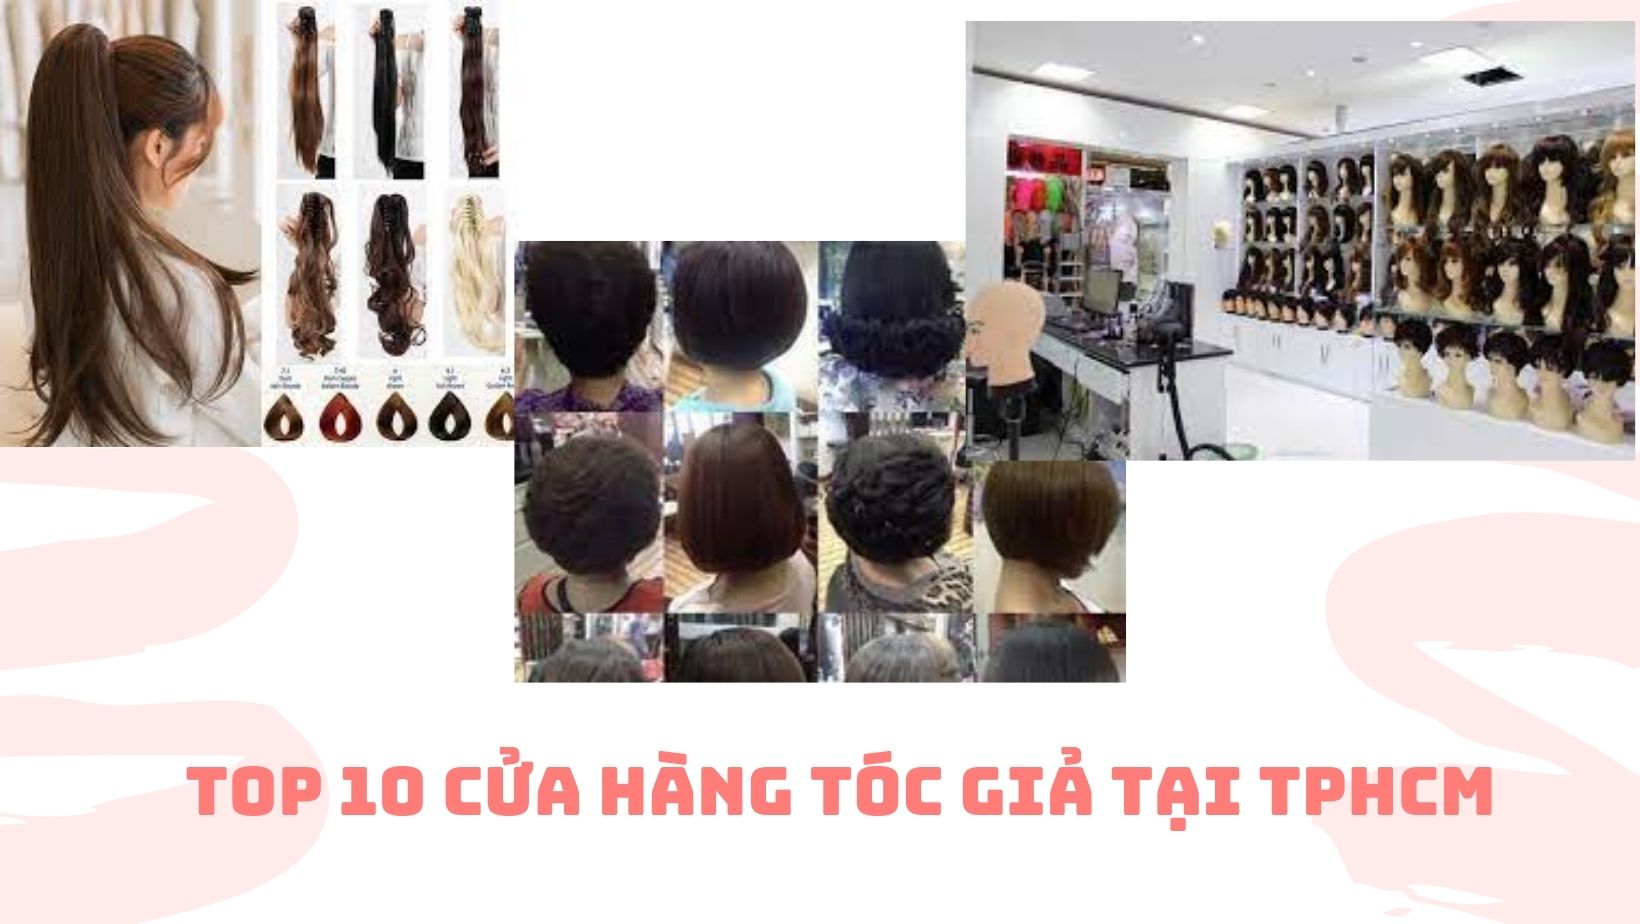 Top 10 cửa hàng tóc giả tại TPHCM 